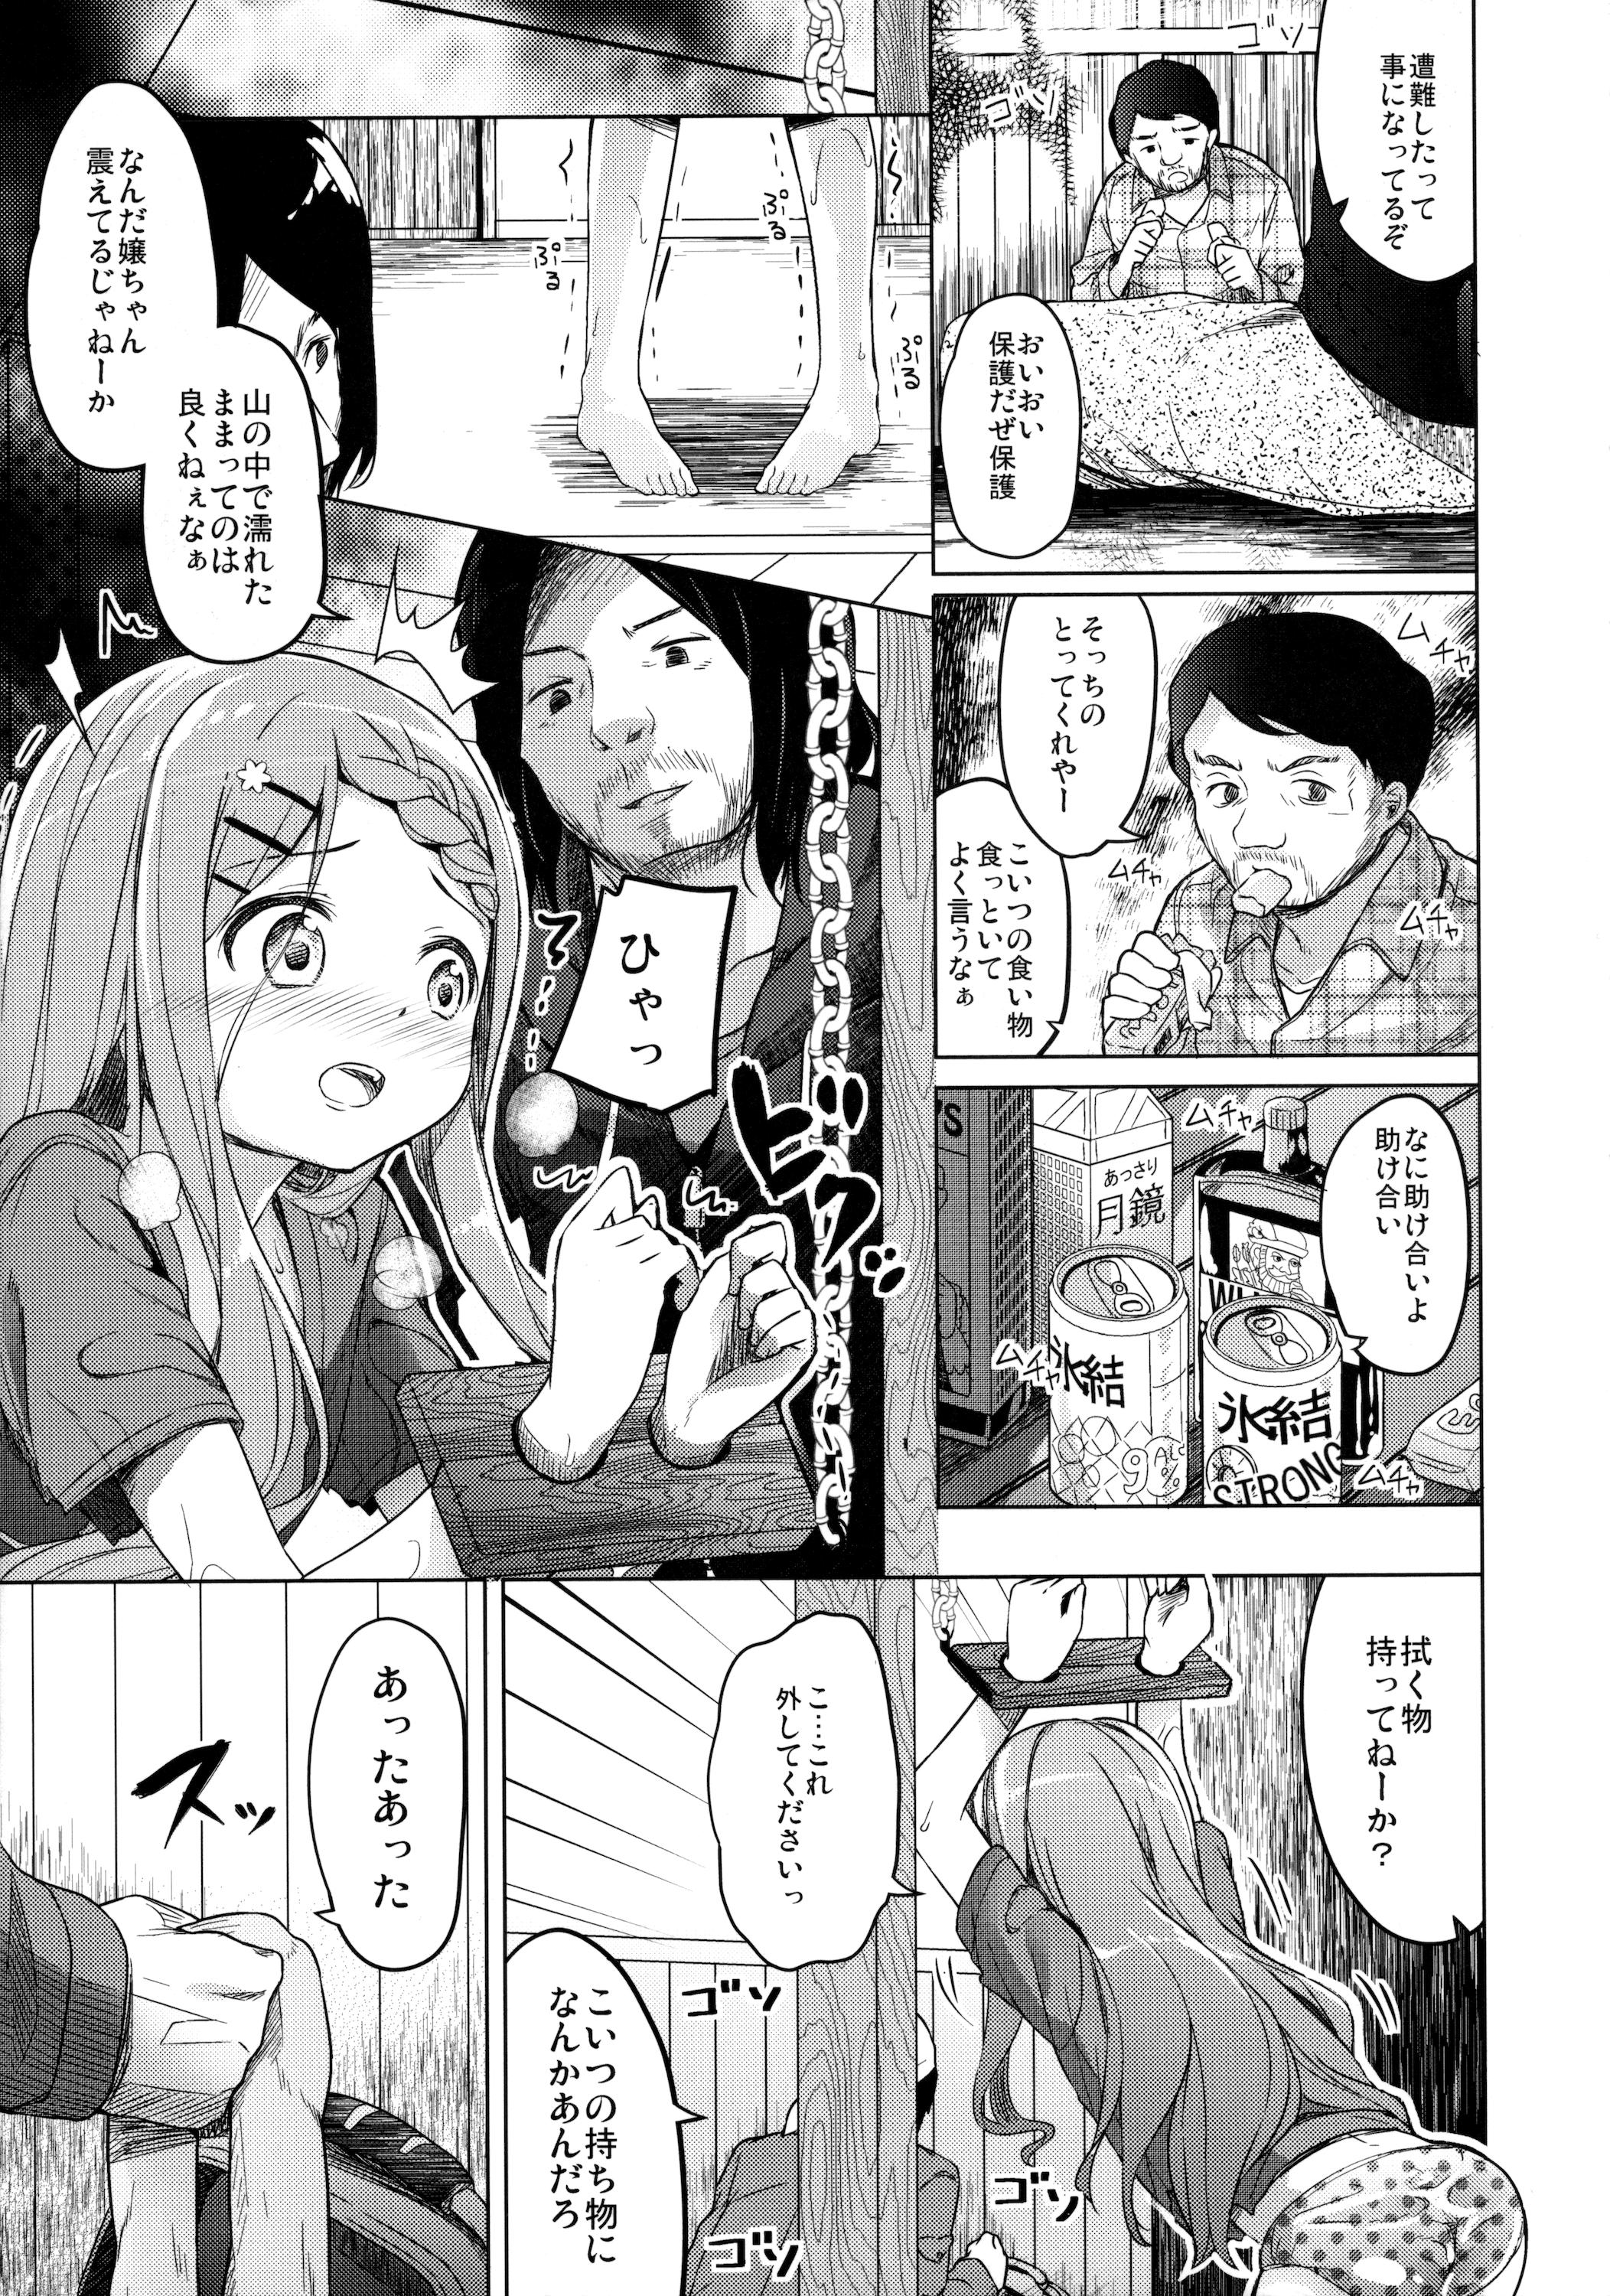 Officesex Yama no Jiken - Yama no susume Letsdoeit - Page 12